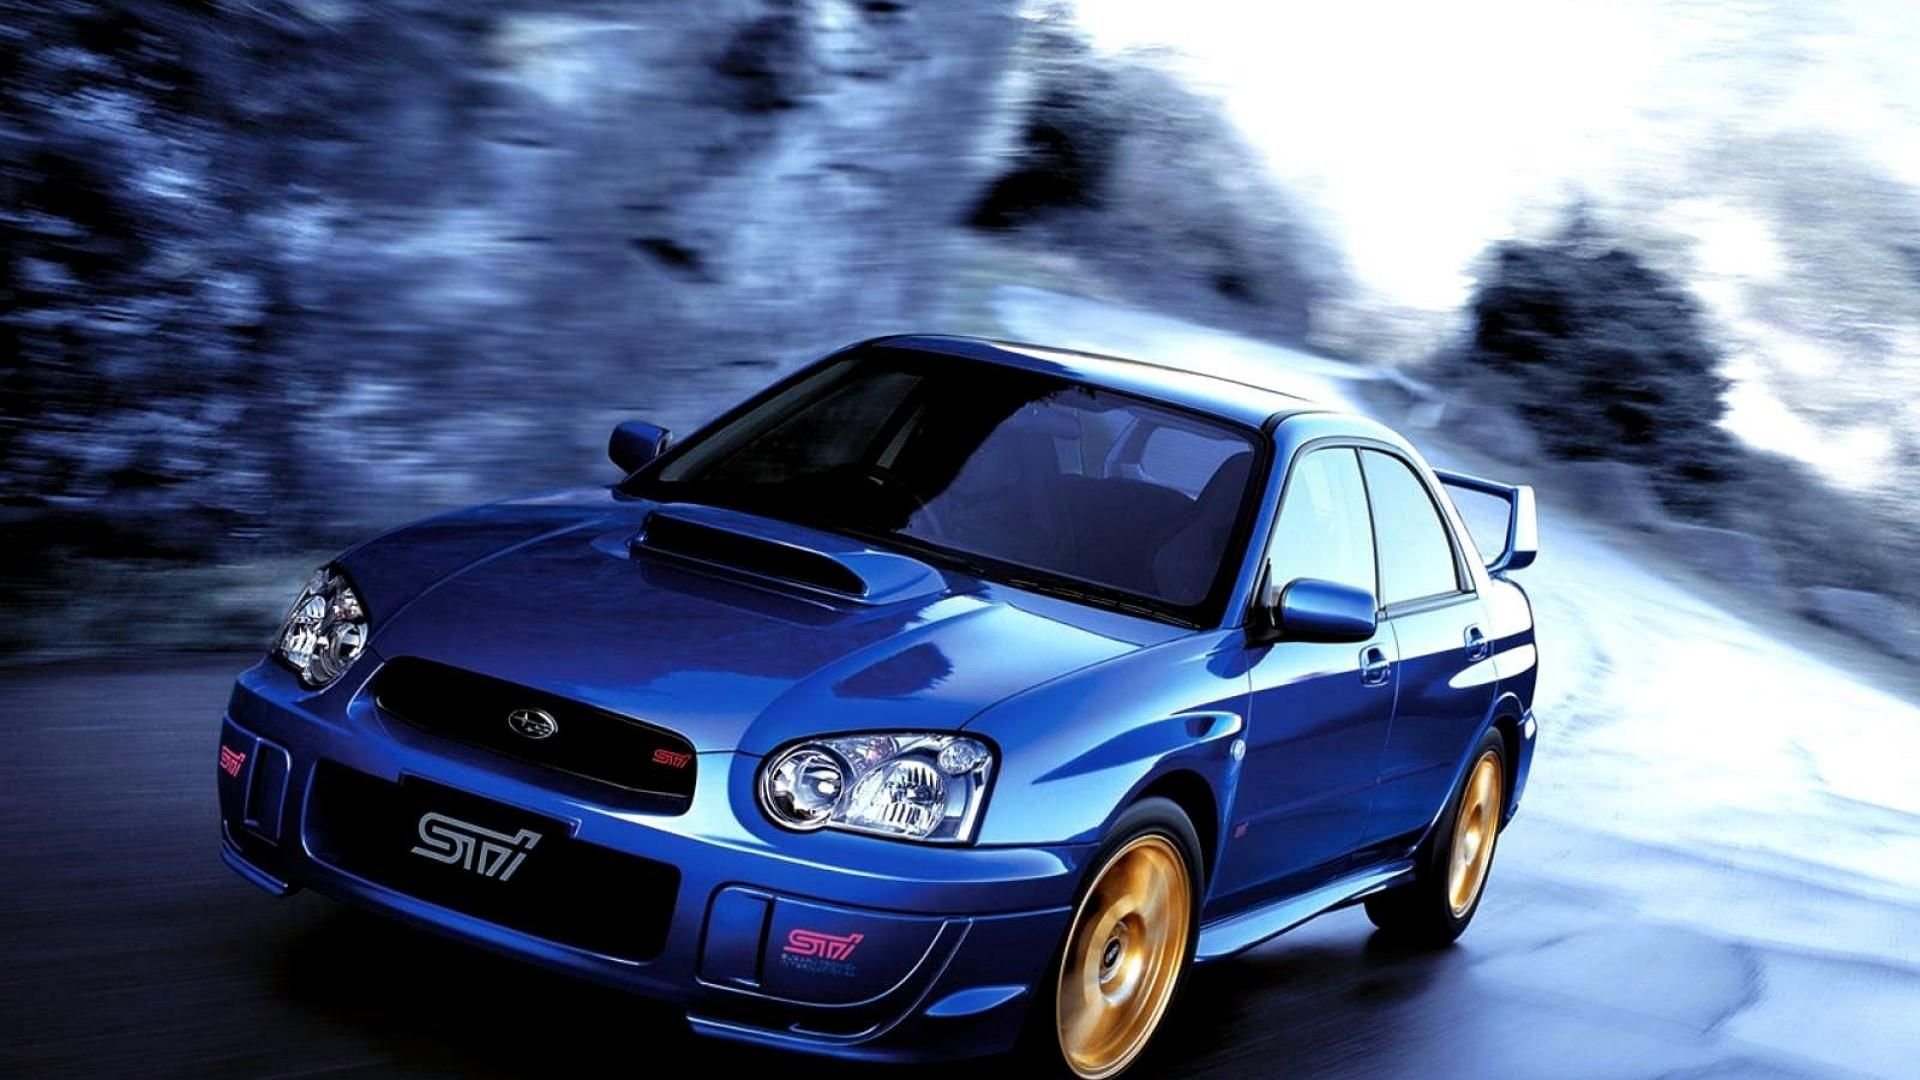 Wrx sti 2004. Subaru Impreza WRX STI 2004. Subaru WRX STI 2004. Subaru Impreza WRX STI 2005. Subaru Impreza WRX 2004.